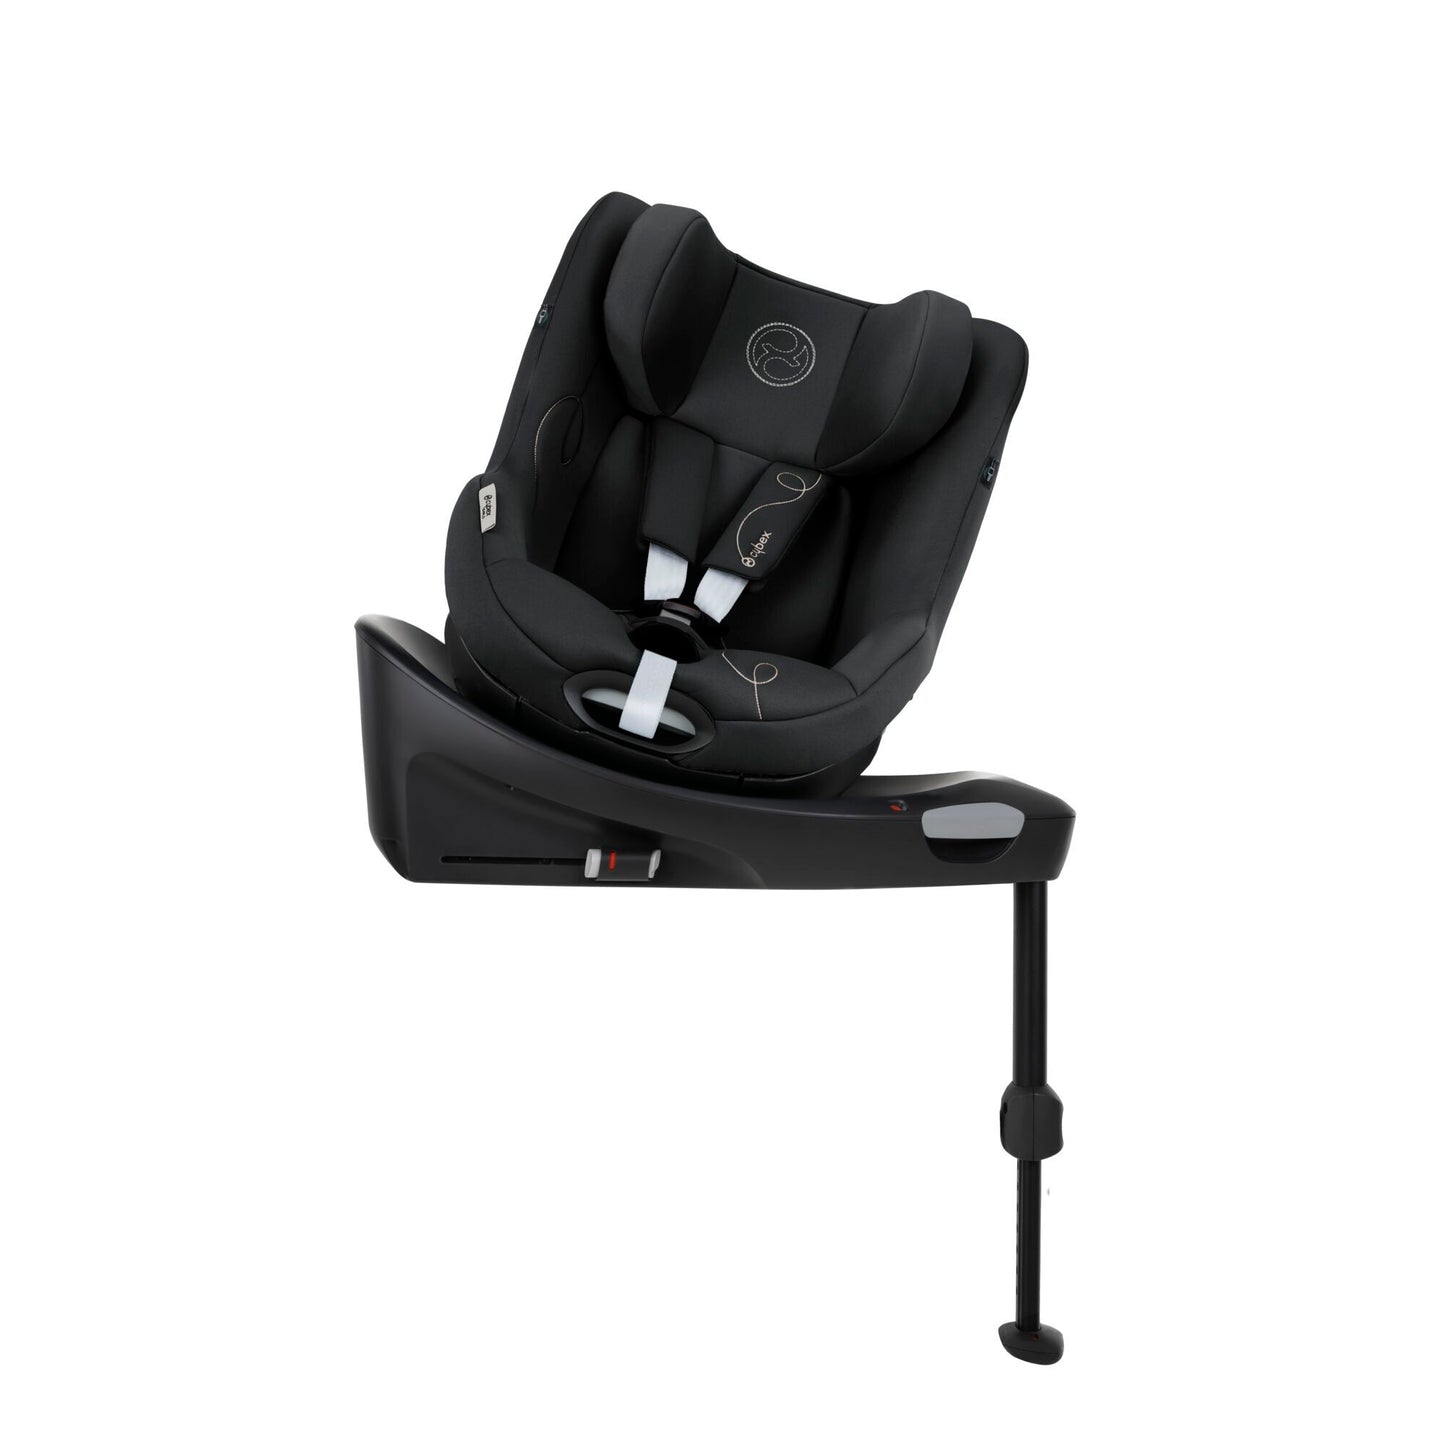 כסא בטיחות Sirona Gi i-Size עם SensorSafe כולל בסיס קבוע לרכב